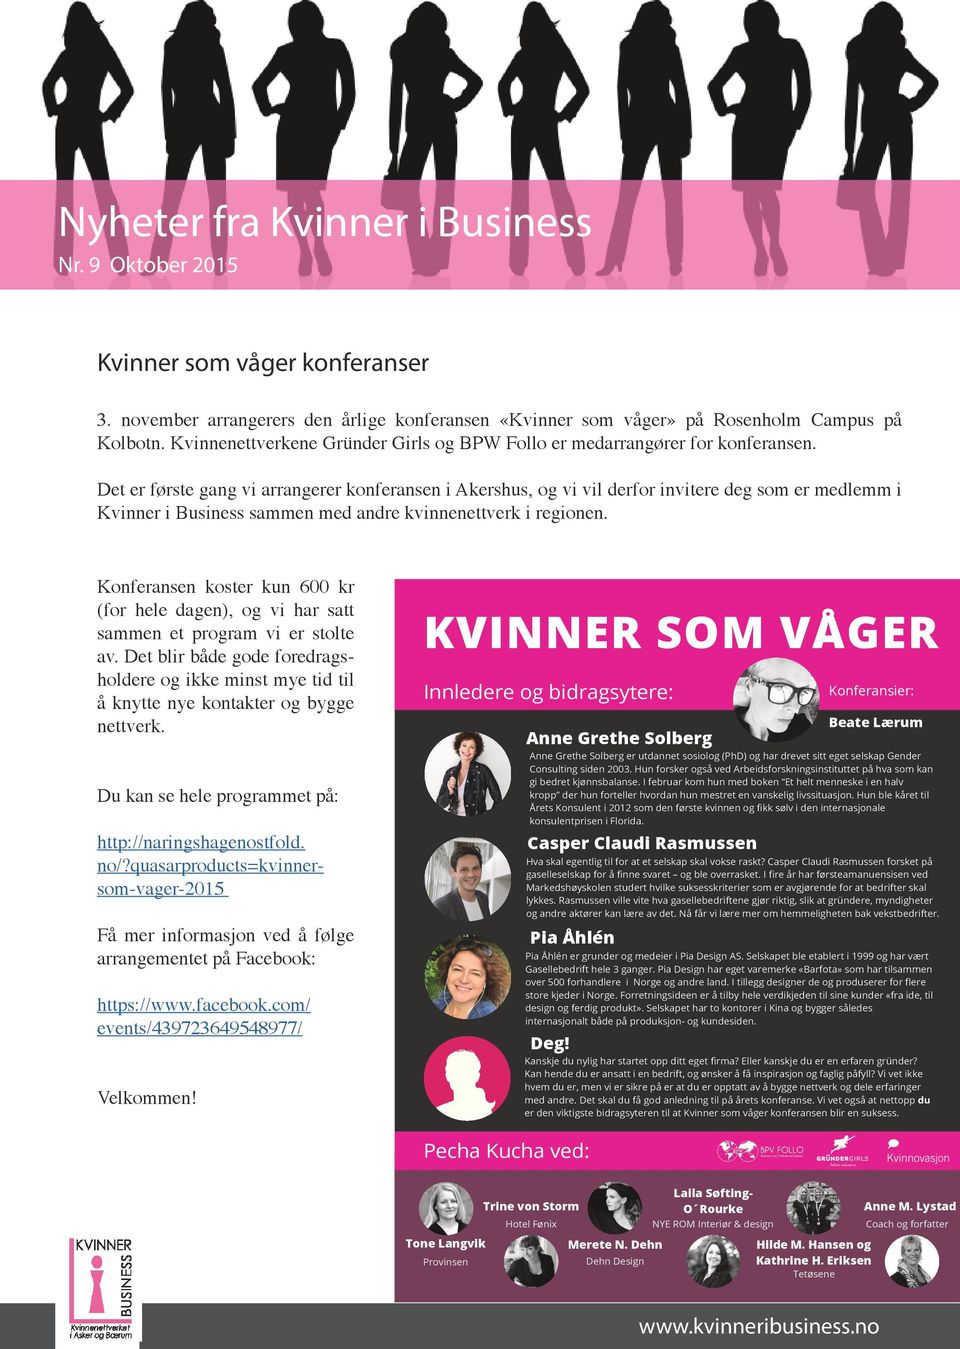 Det er første gang vi arrangerer konferansen i Akershus, og vi vil derfor invitere deg som er medlemm i Kvinner i Business sammen med andre kvinnenettverk i regionen.